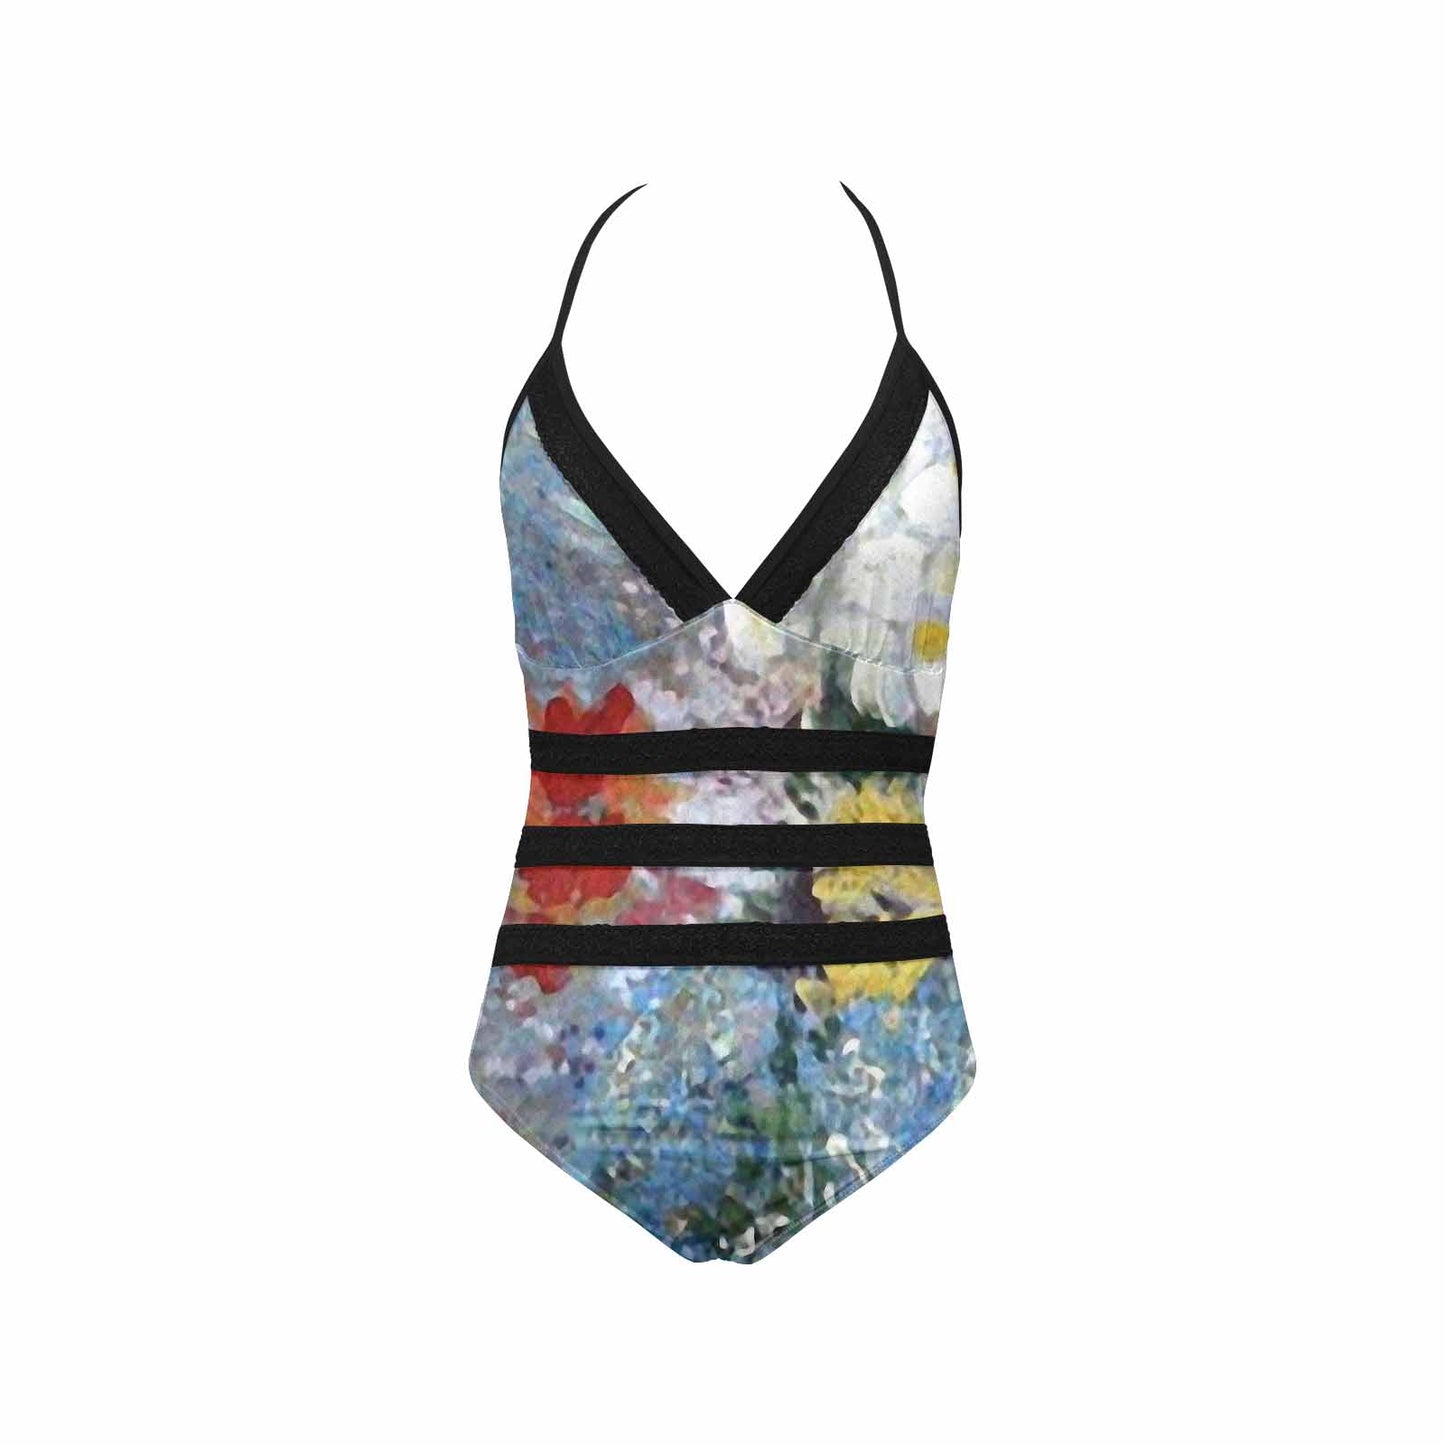 Vintage floral, vintage chest collar, one piece swim wear, Design 41